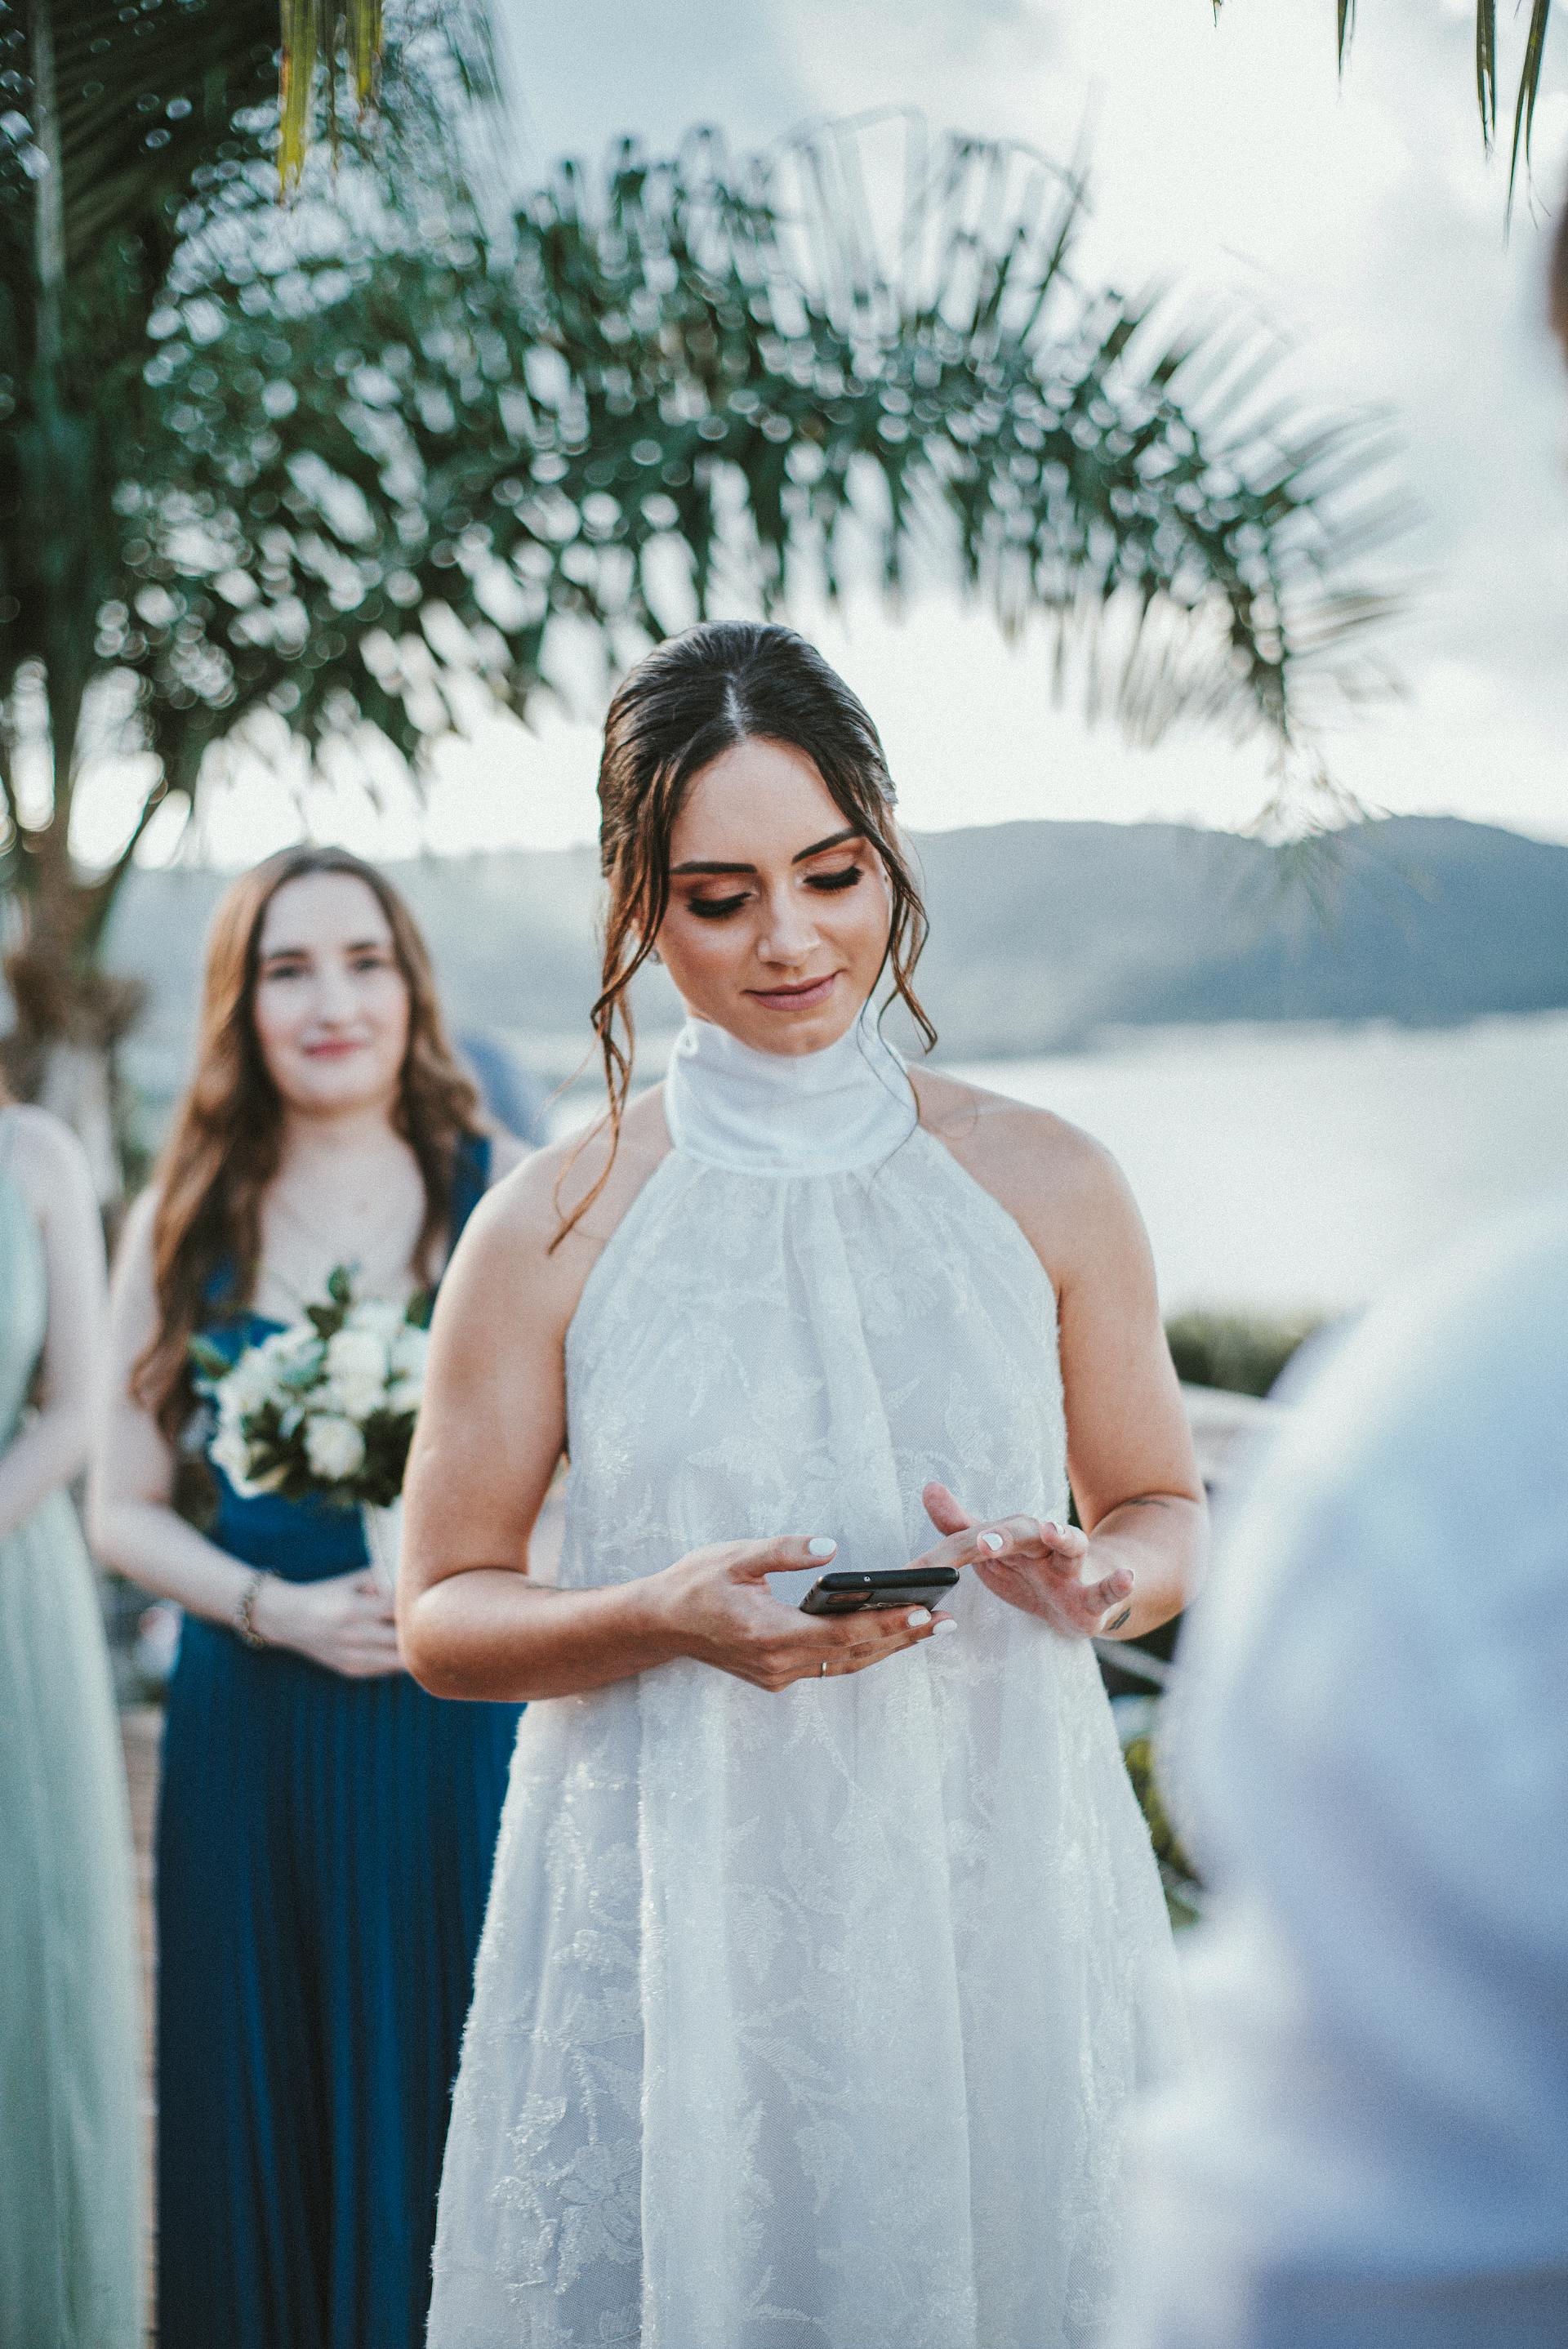 Une mariée vérifiant son téléphone | Source : Pexels